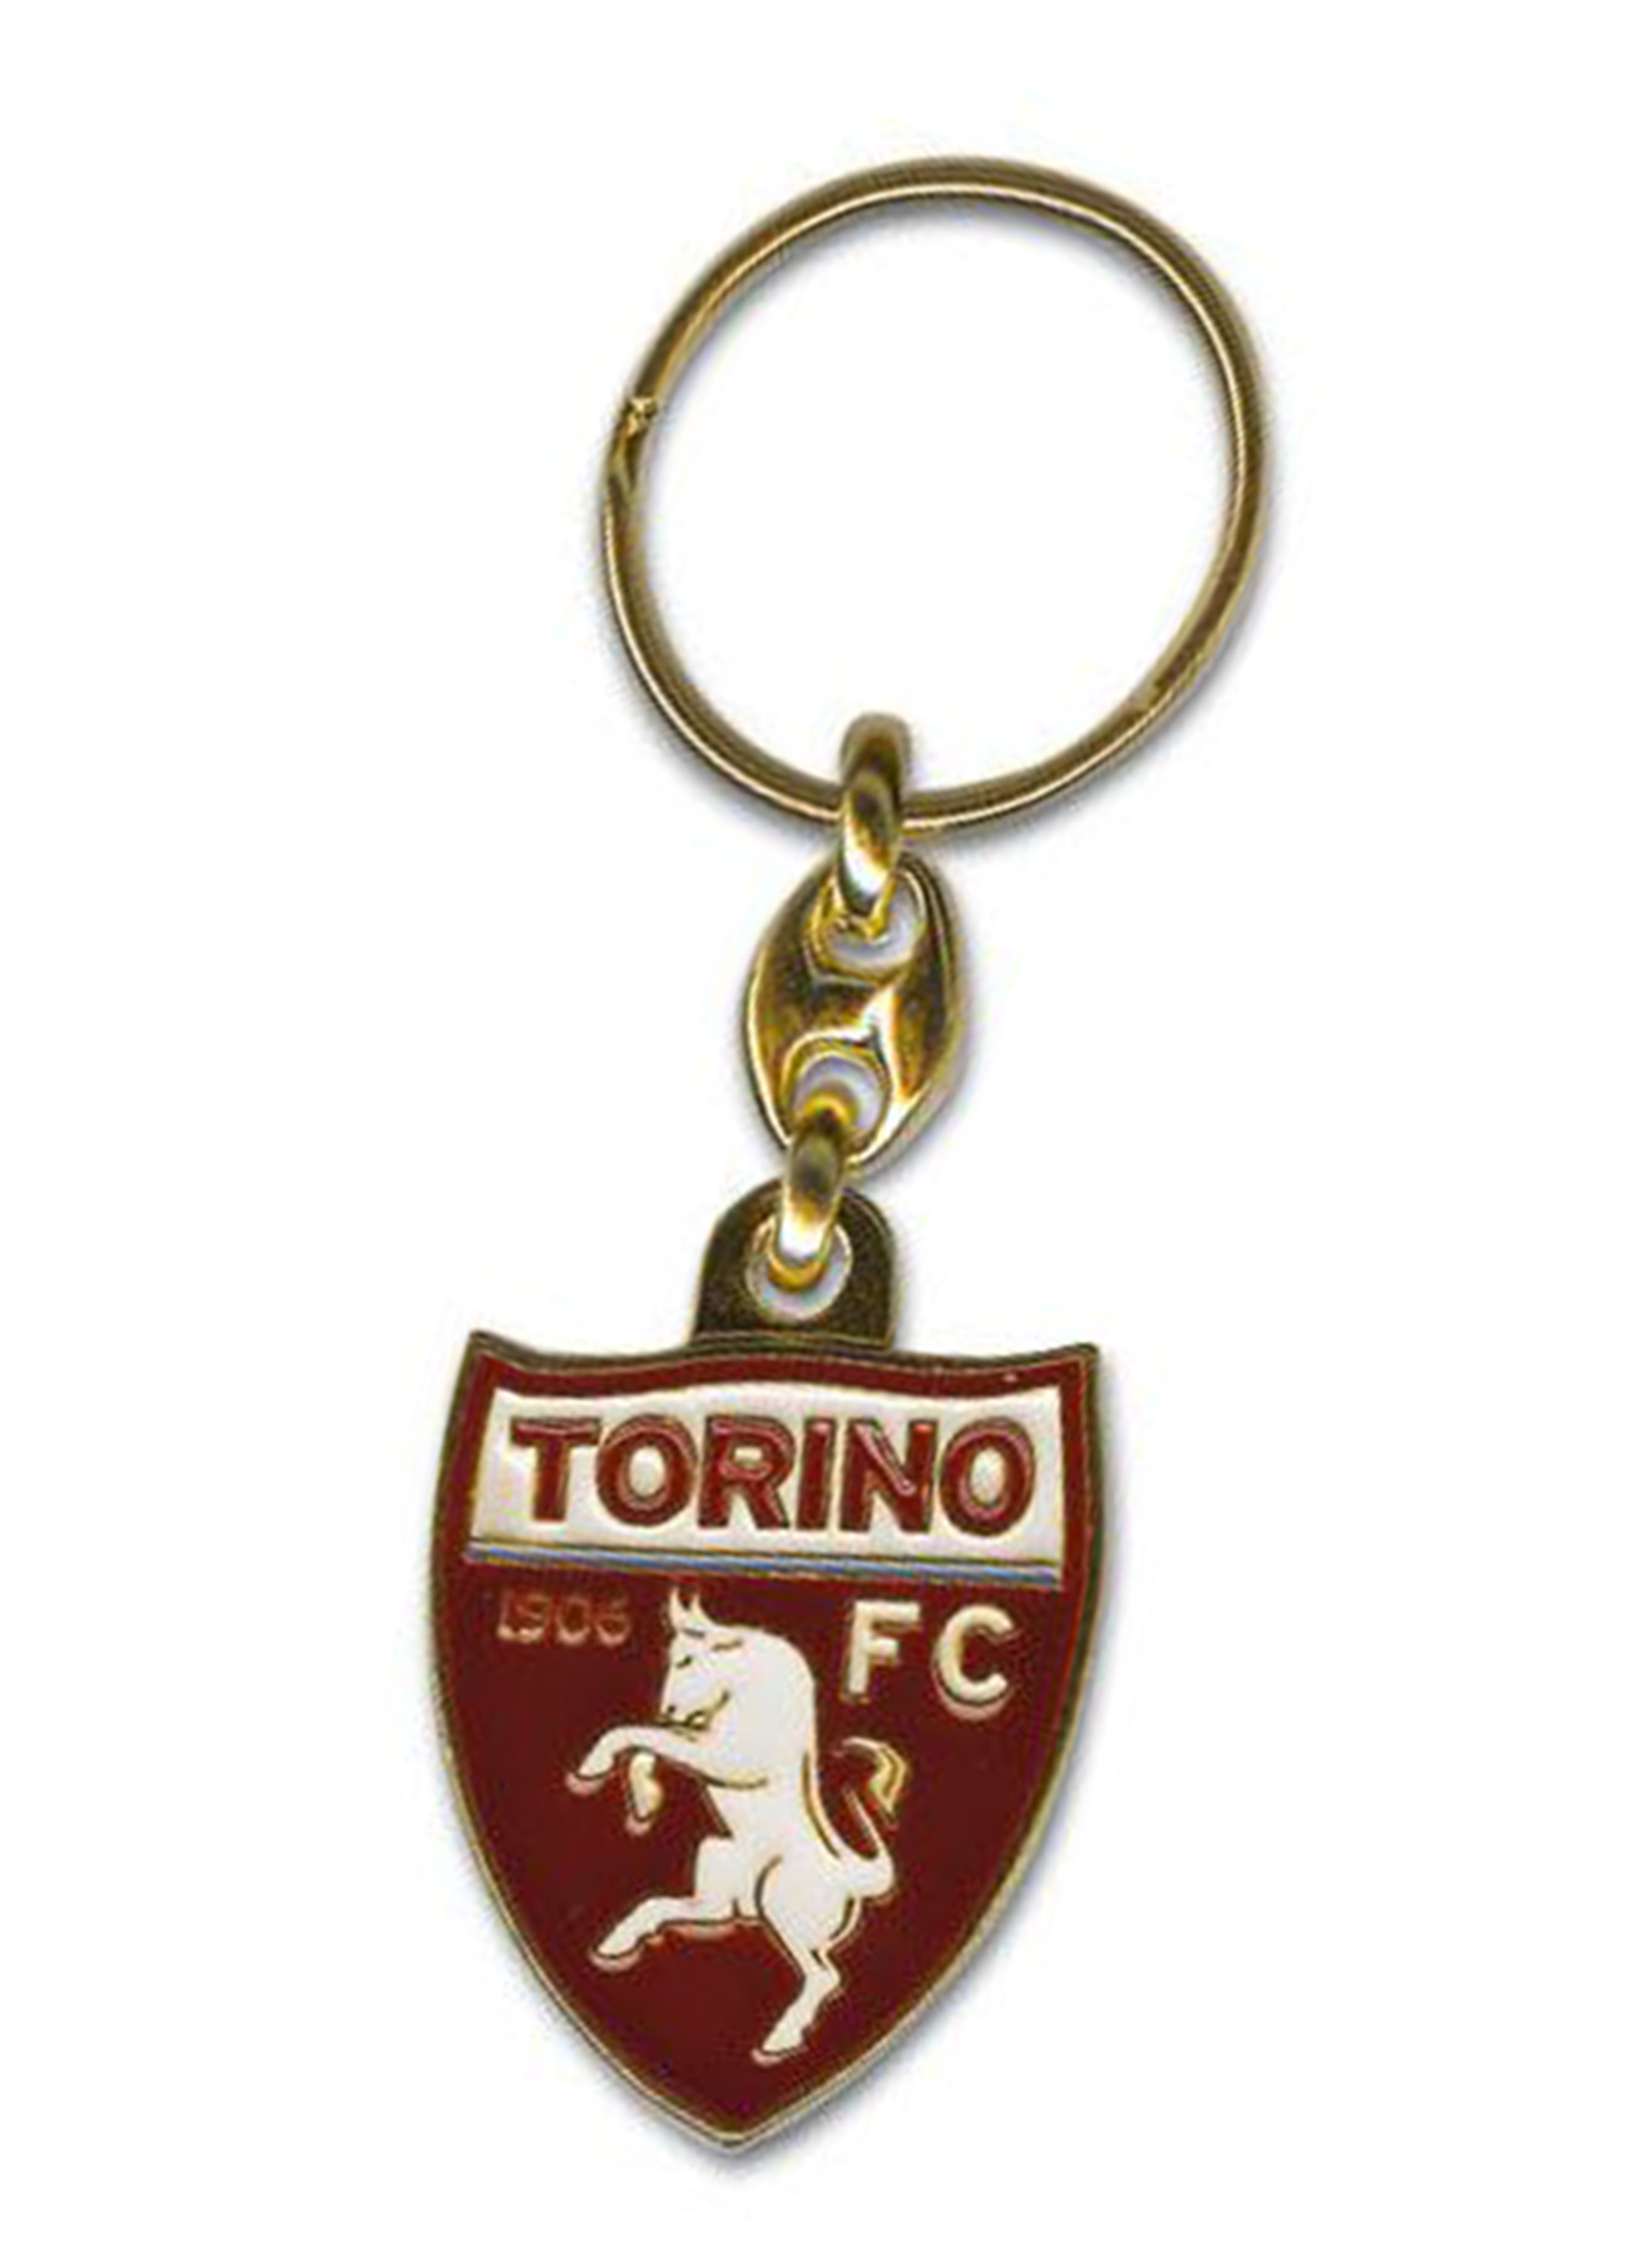 CUSCINO UFFICIALE TORINO FC CALCIO ORIGINALE TORO e cartolina TORINO È 